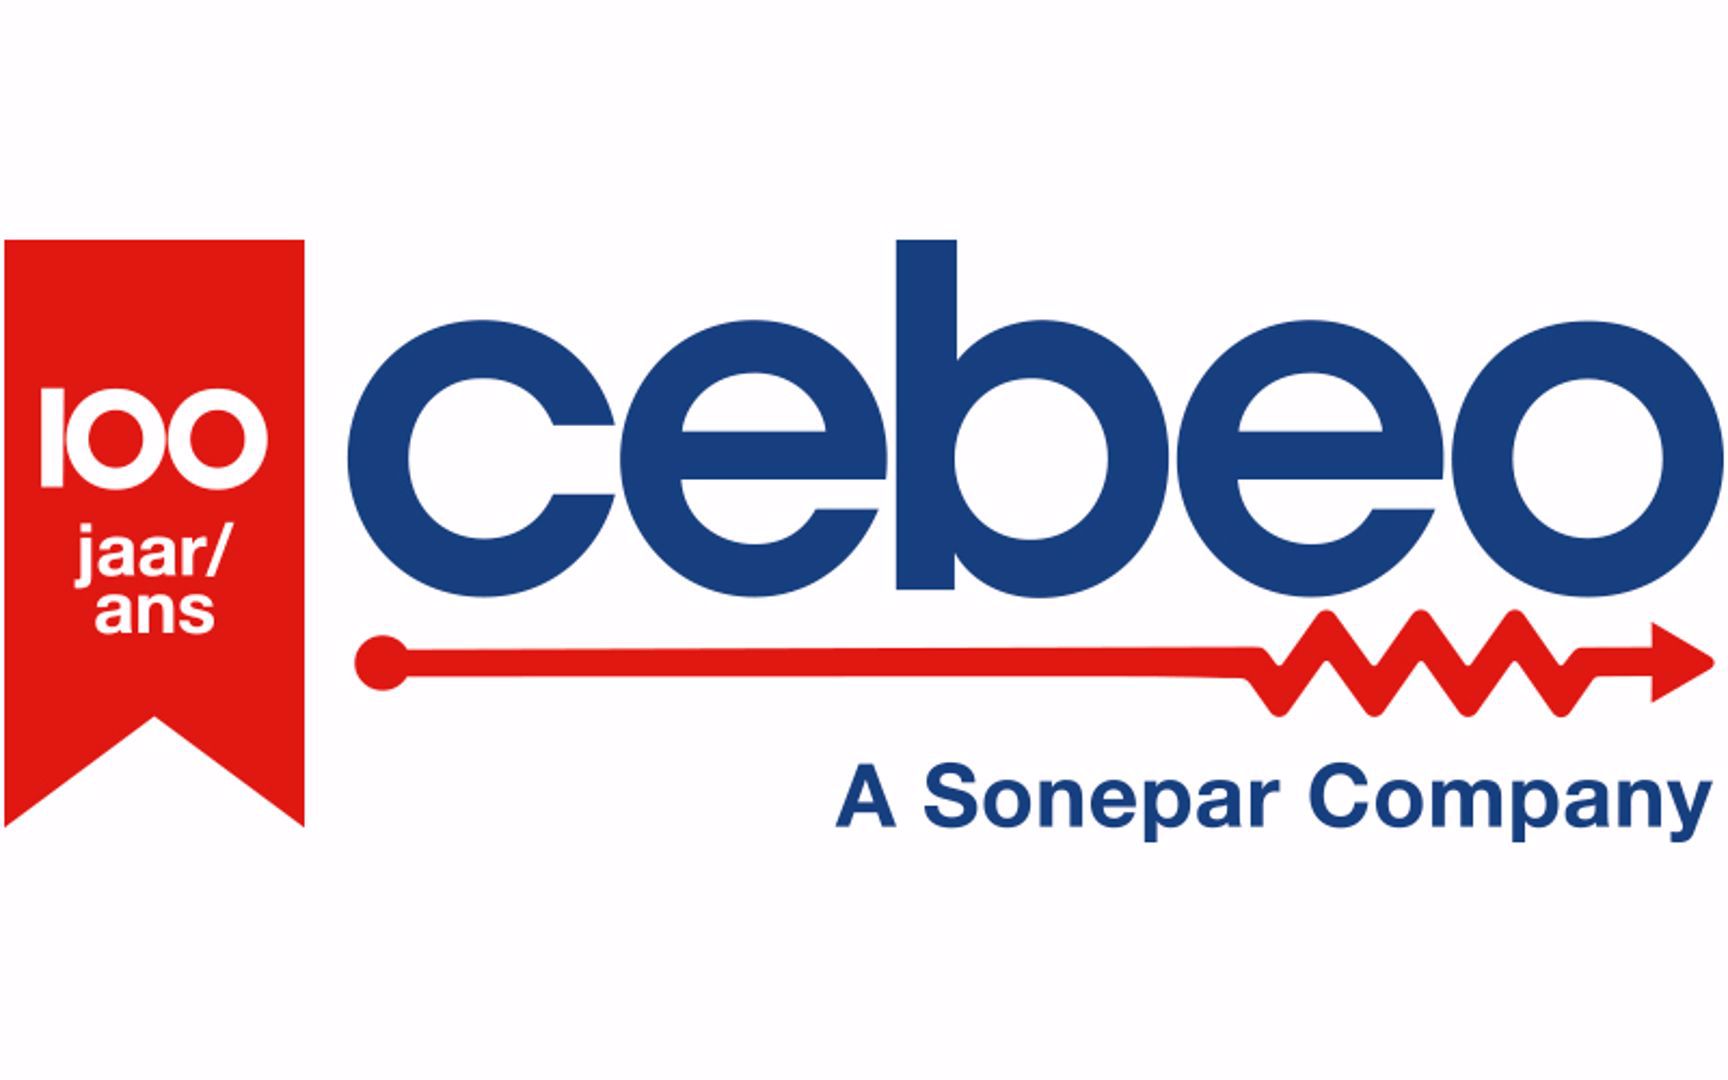 Cebeo viert zijn 100-jarig bestaan 